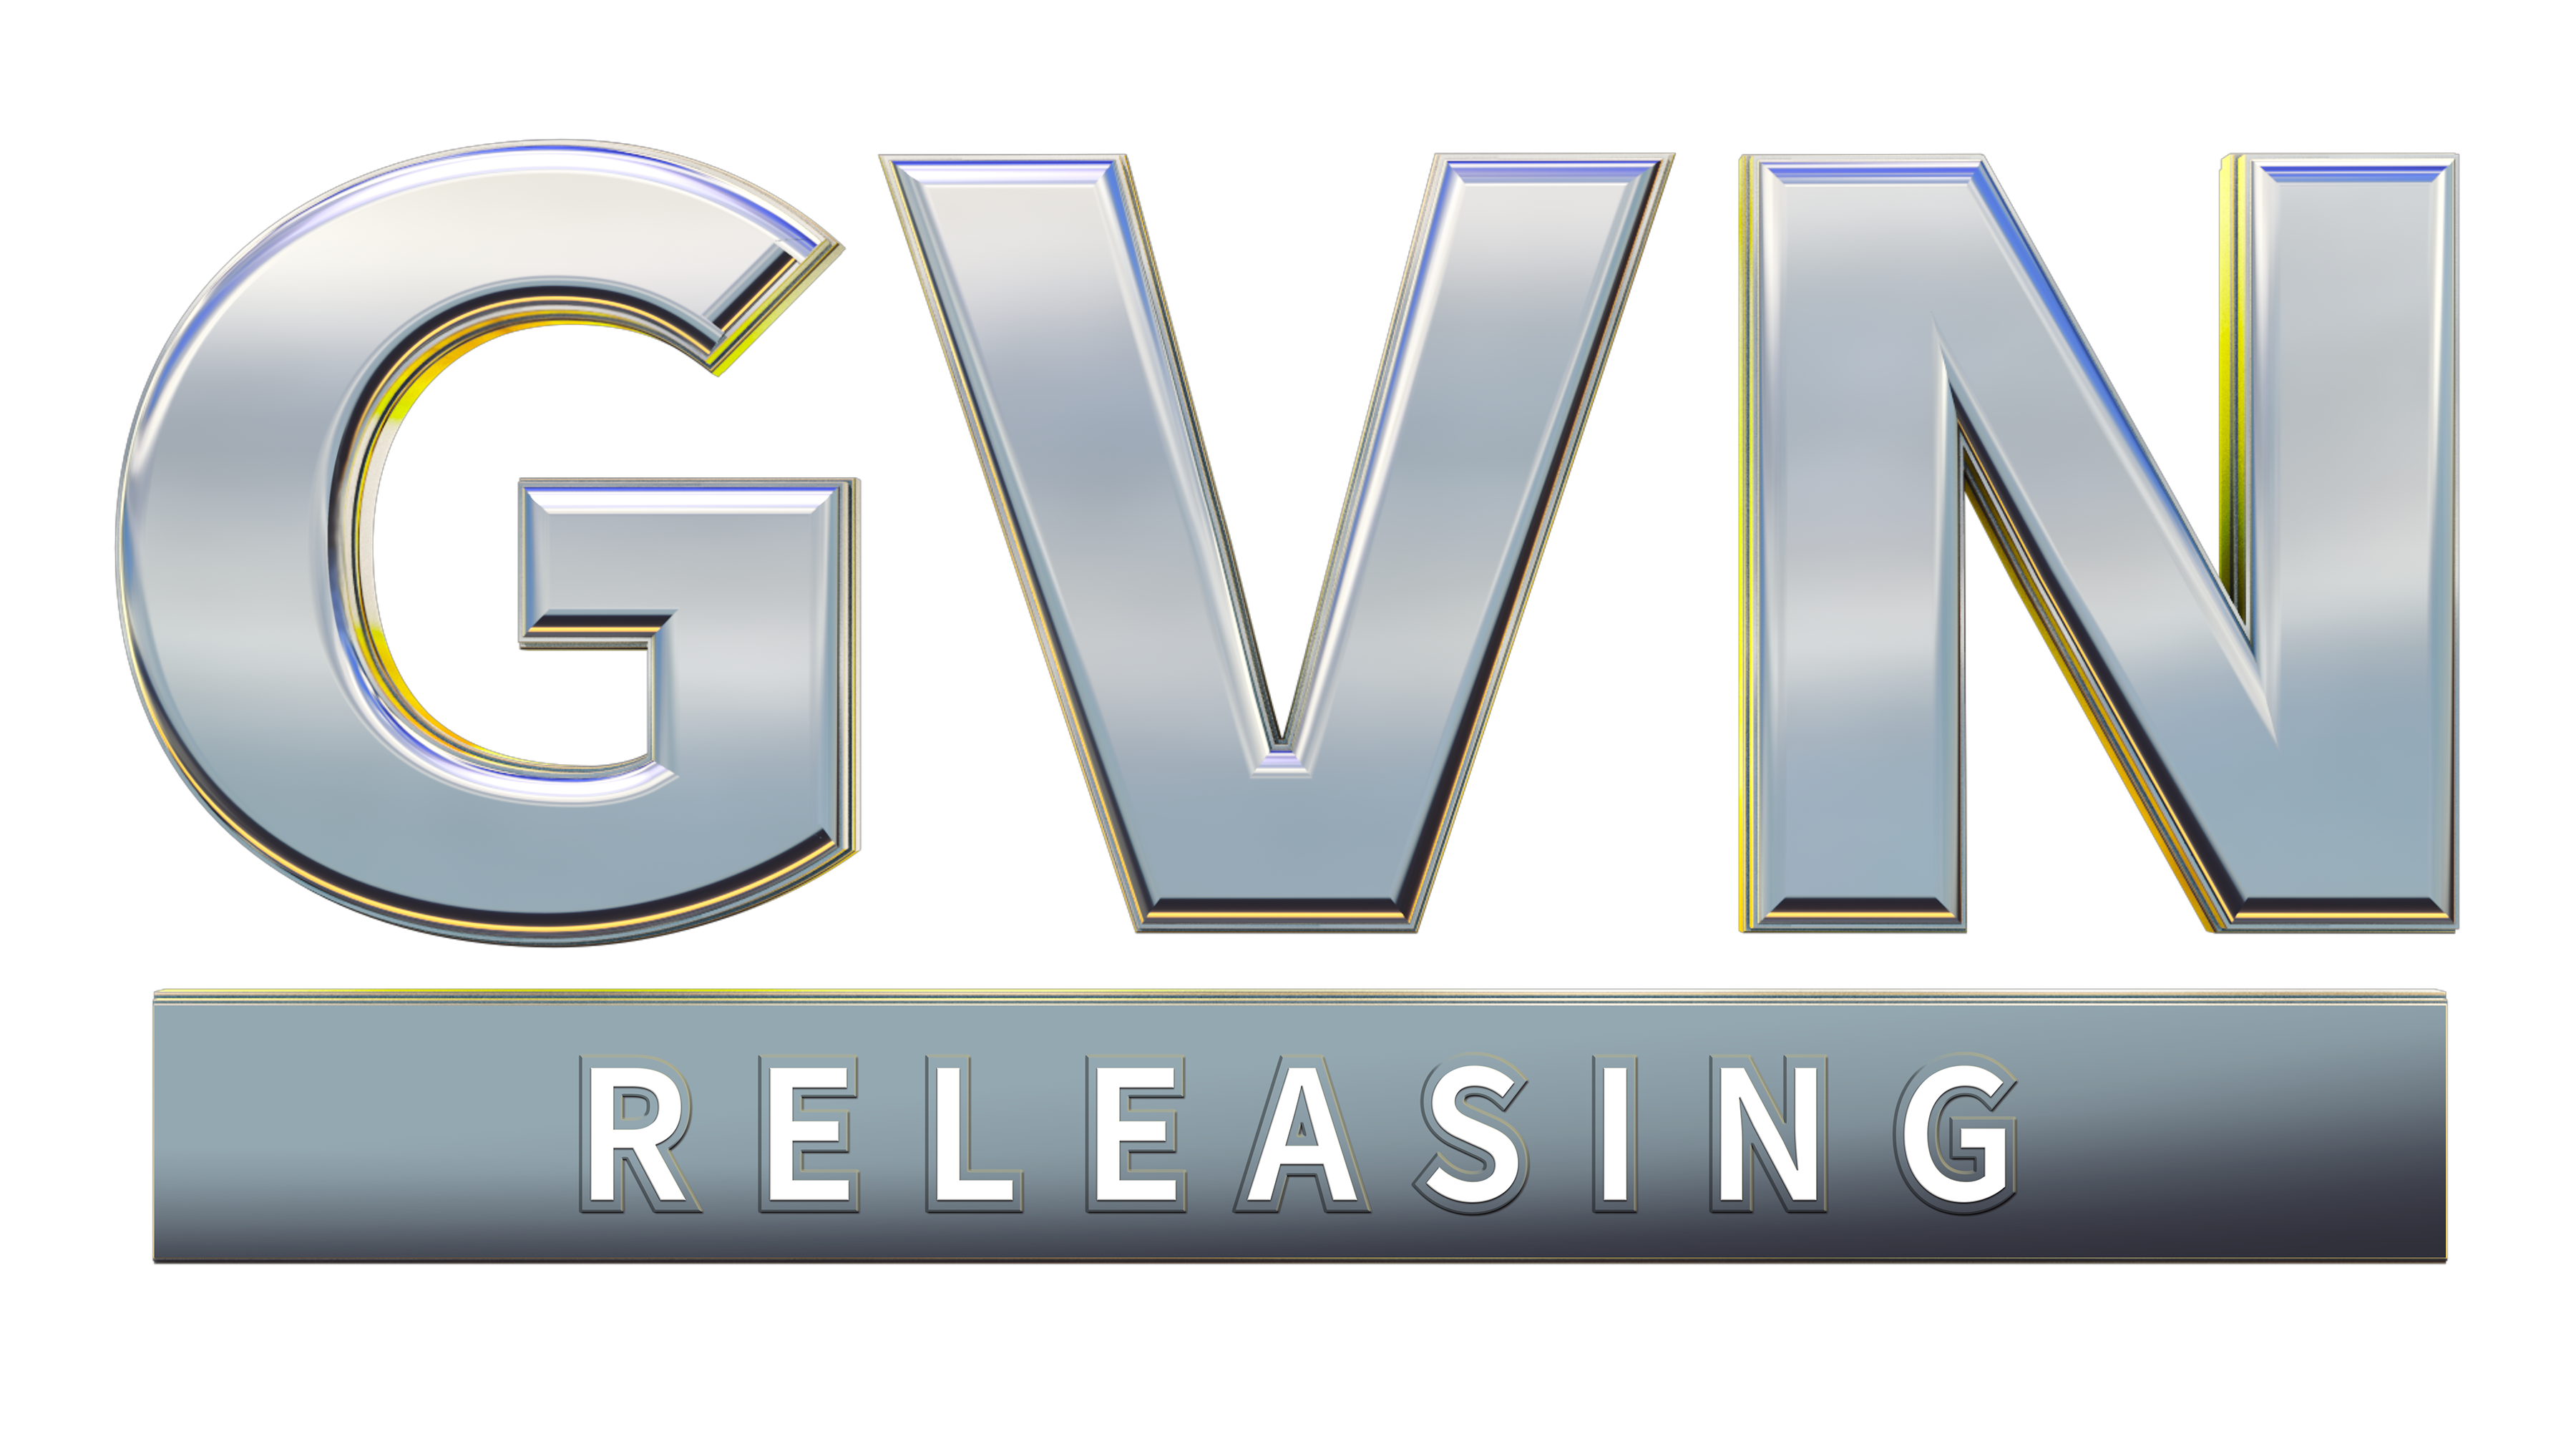 GVN Releasing